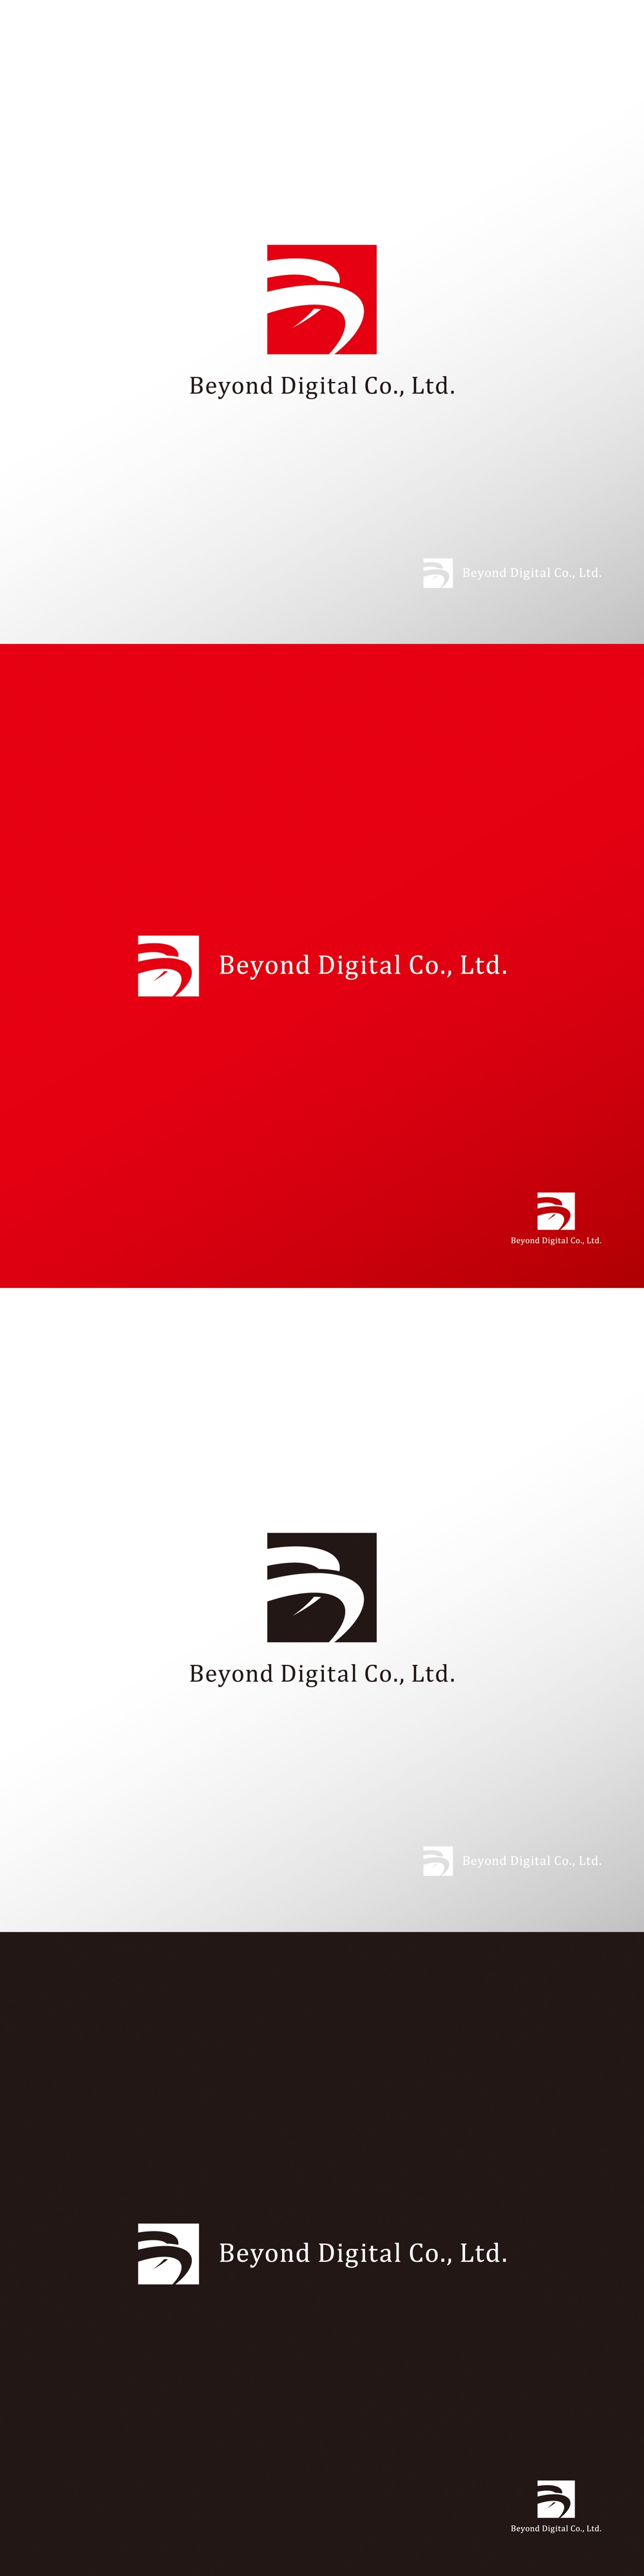 サービス_Beyond Digital Co., Ltd._ロゴA1.jpg